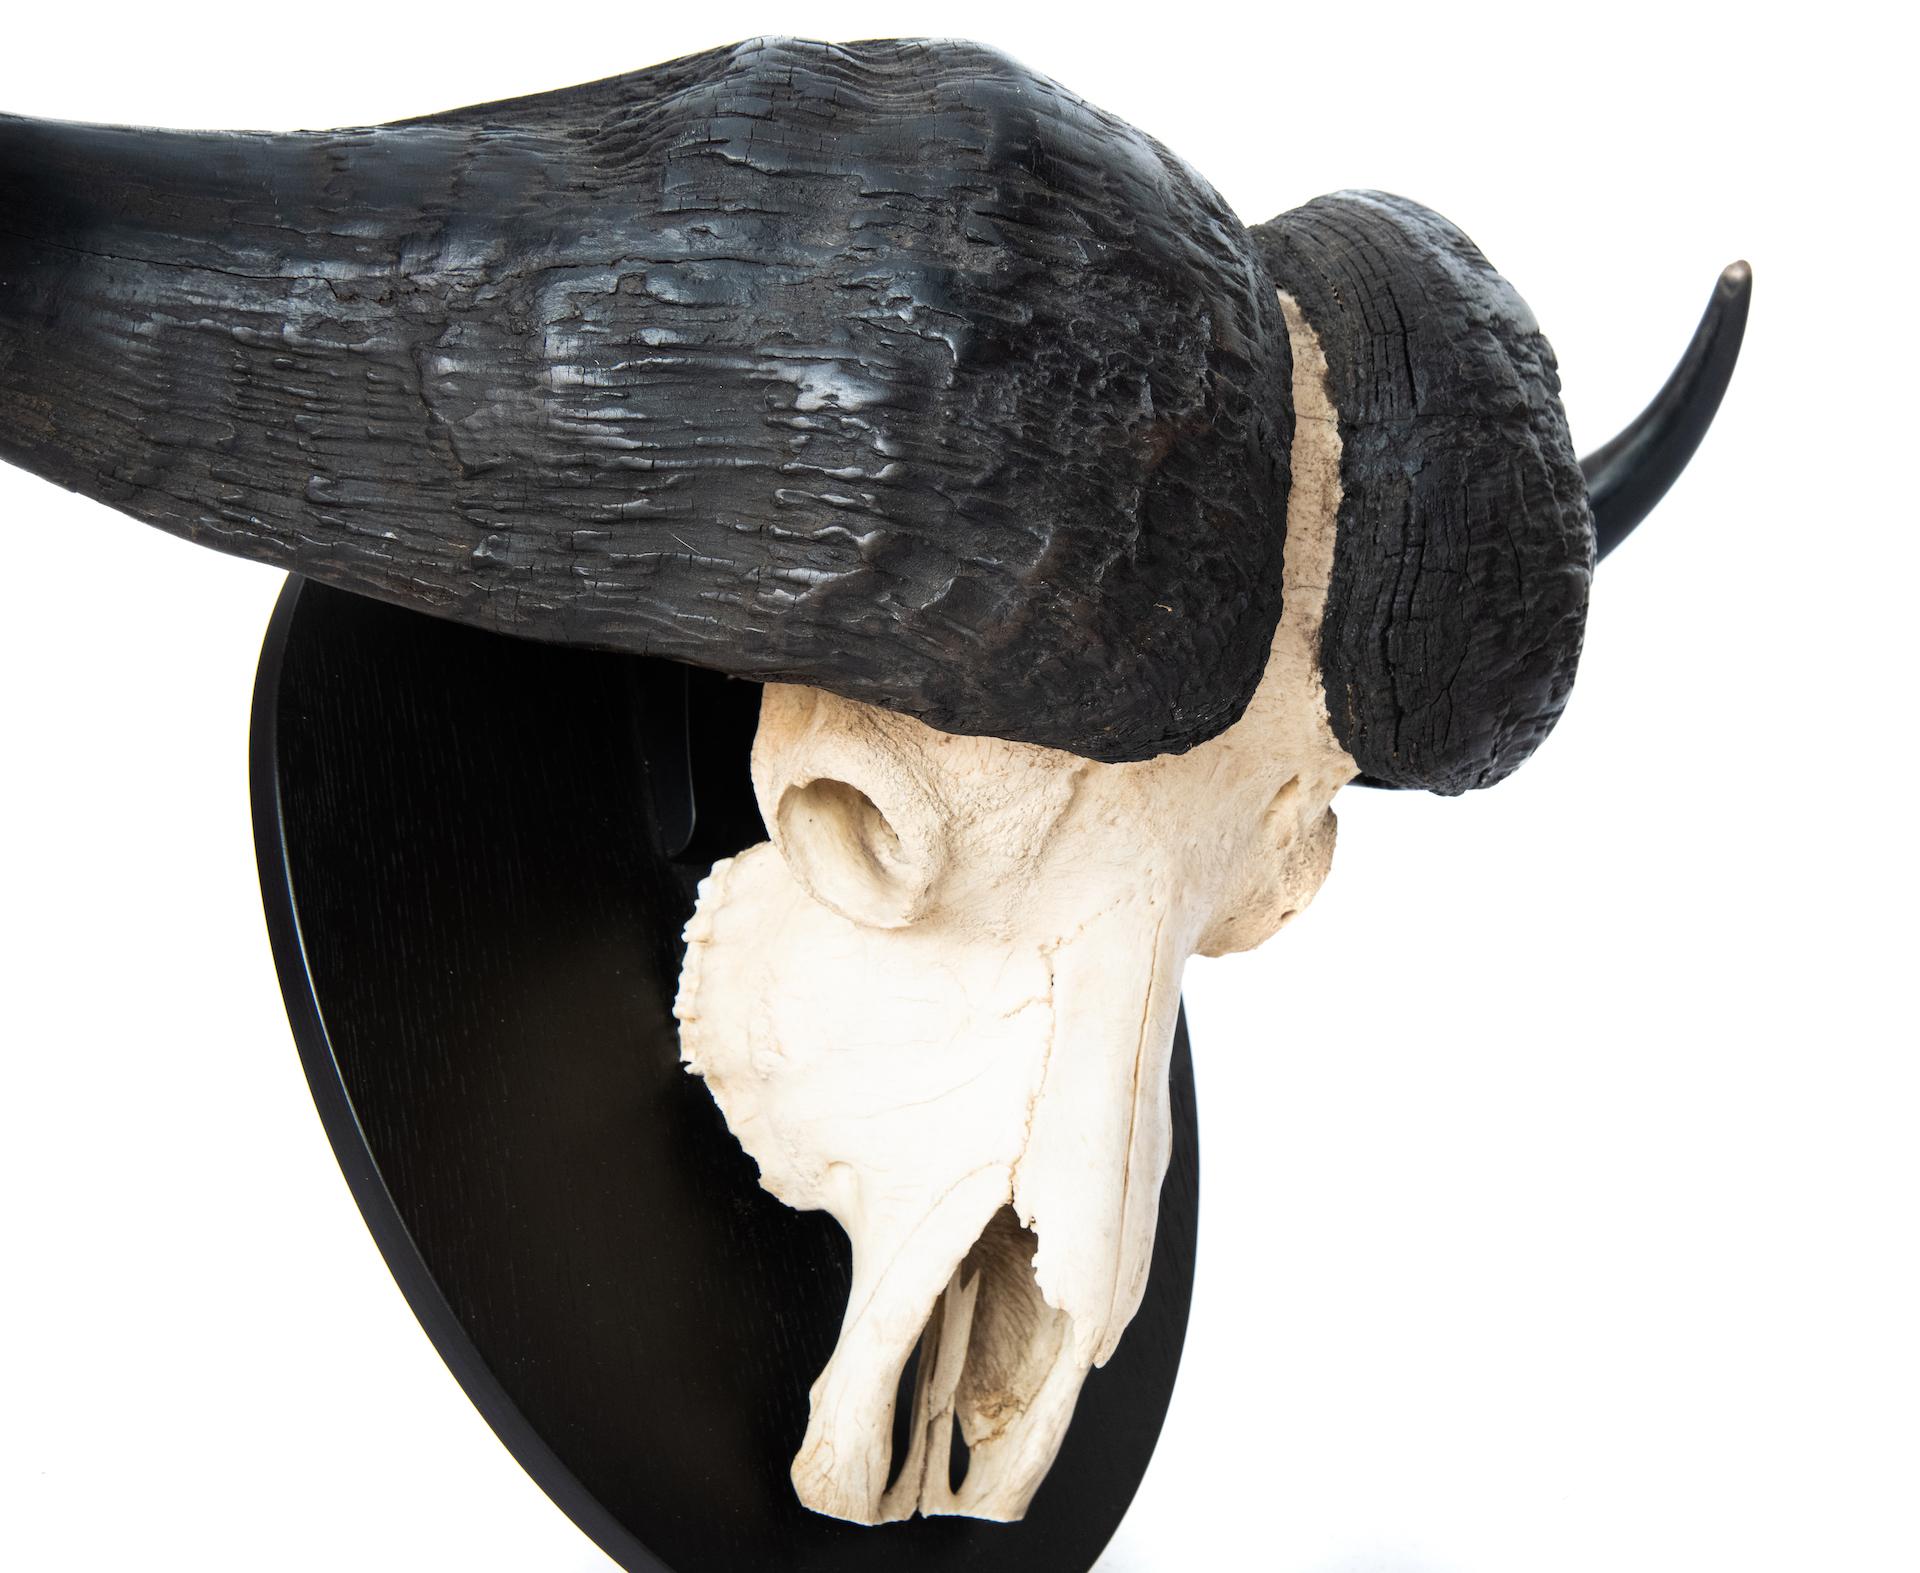 cape buffalo horns for sale